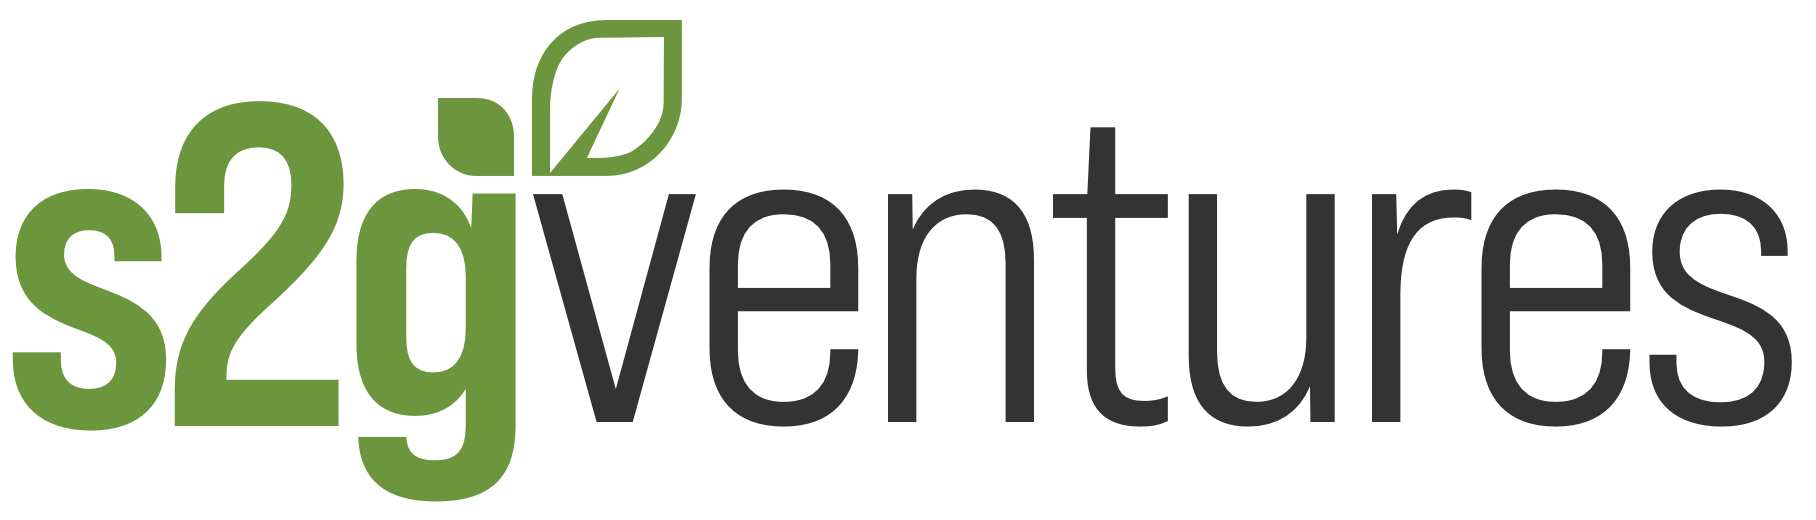 s2gventures-Logo